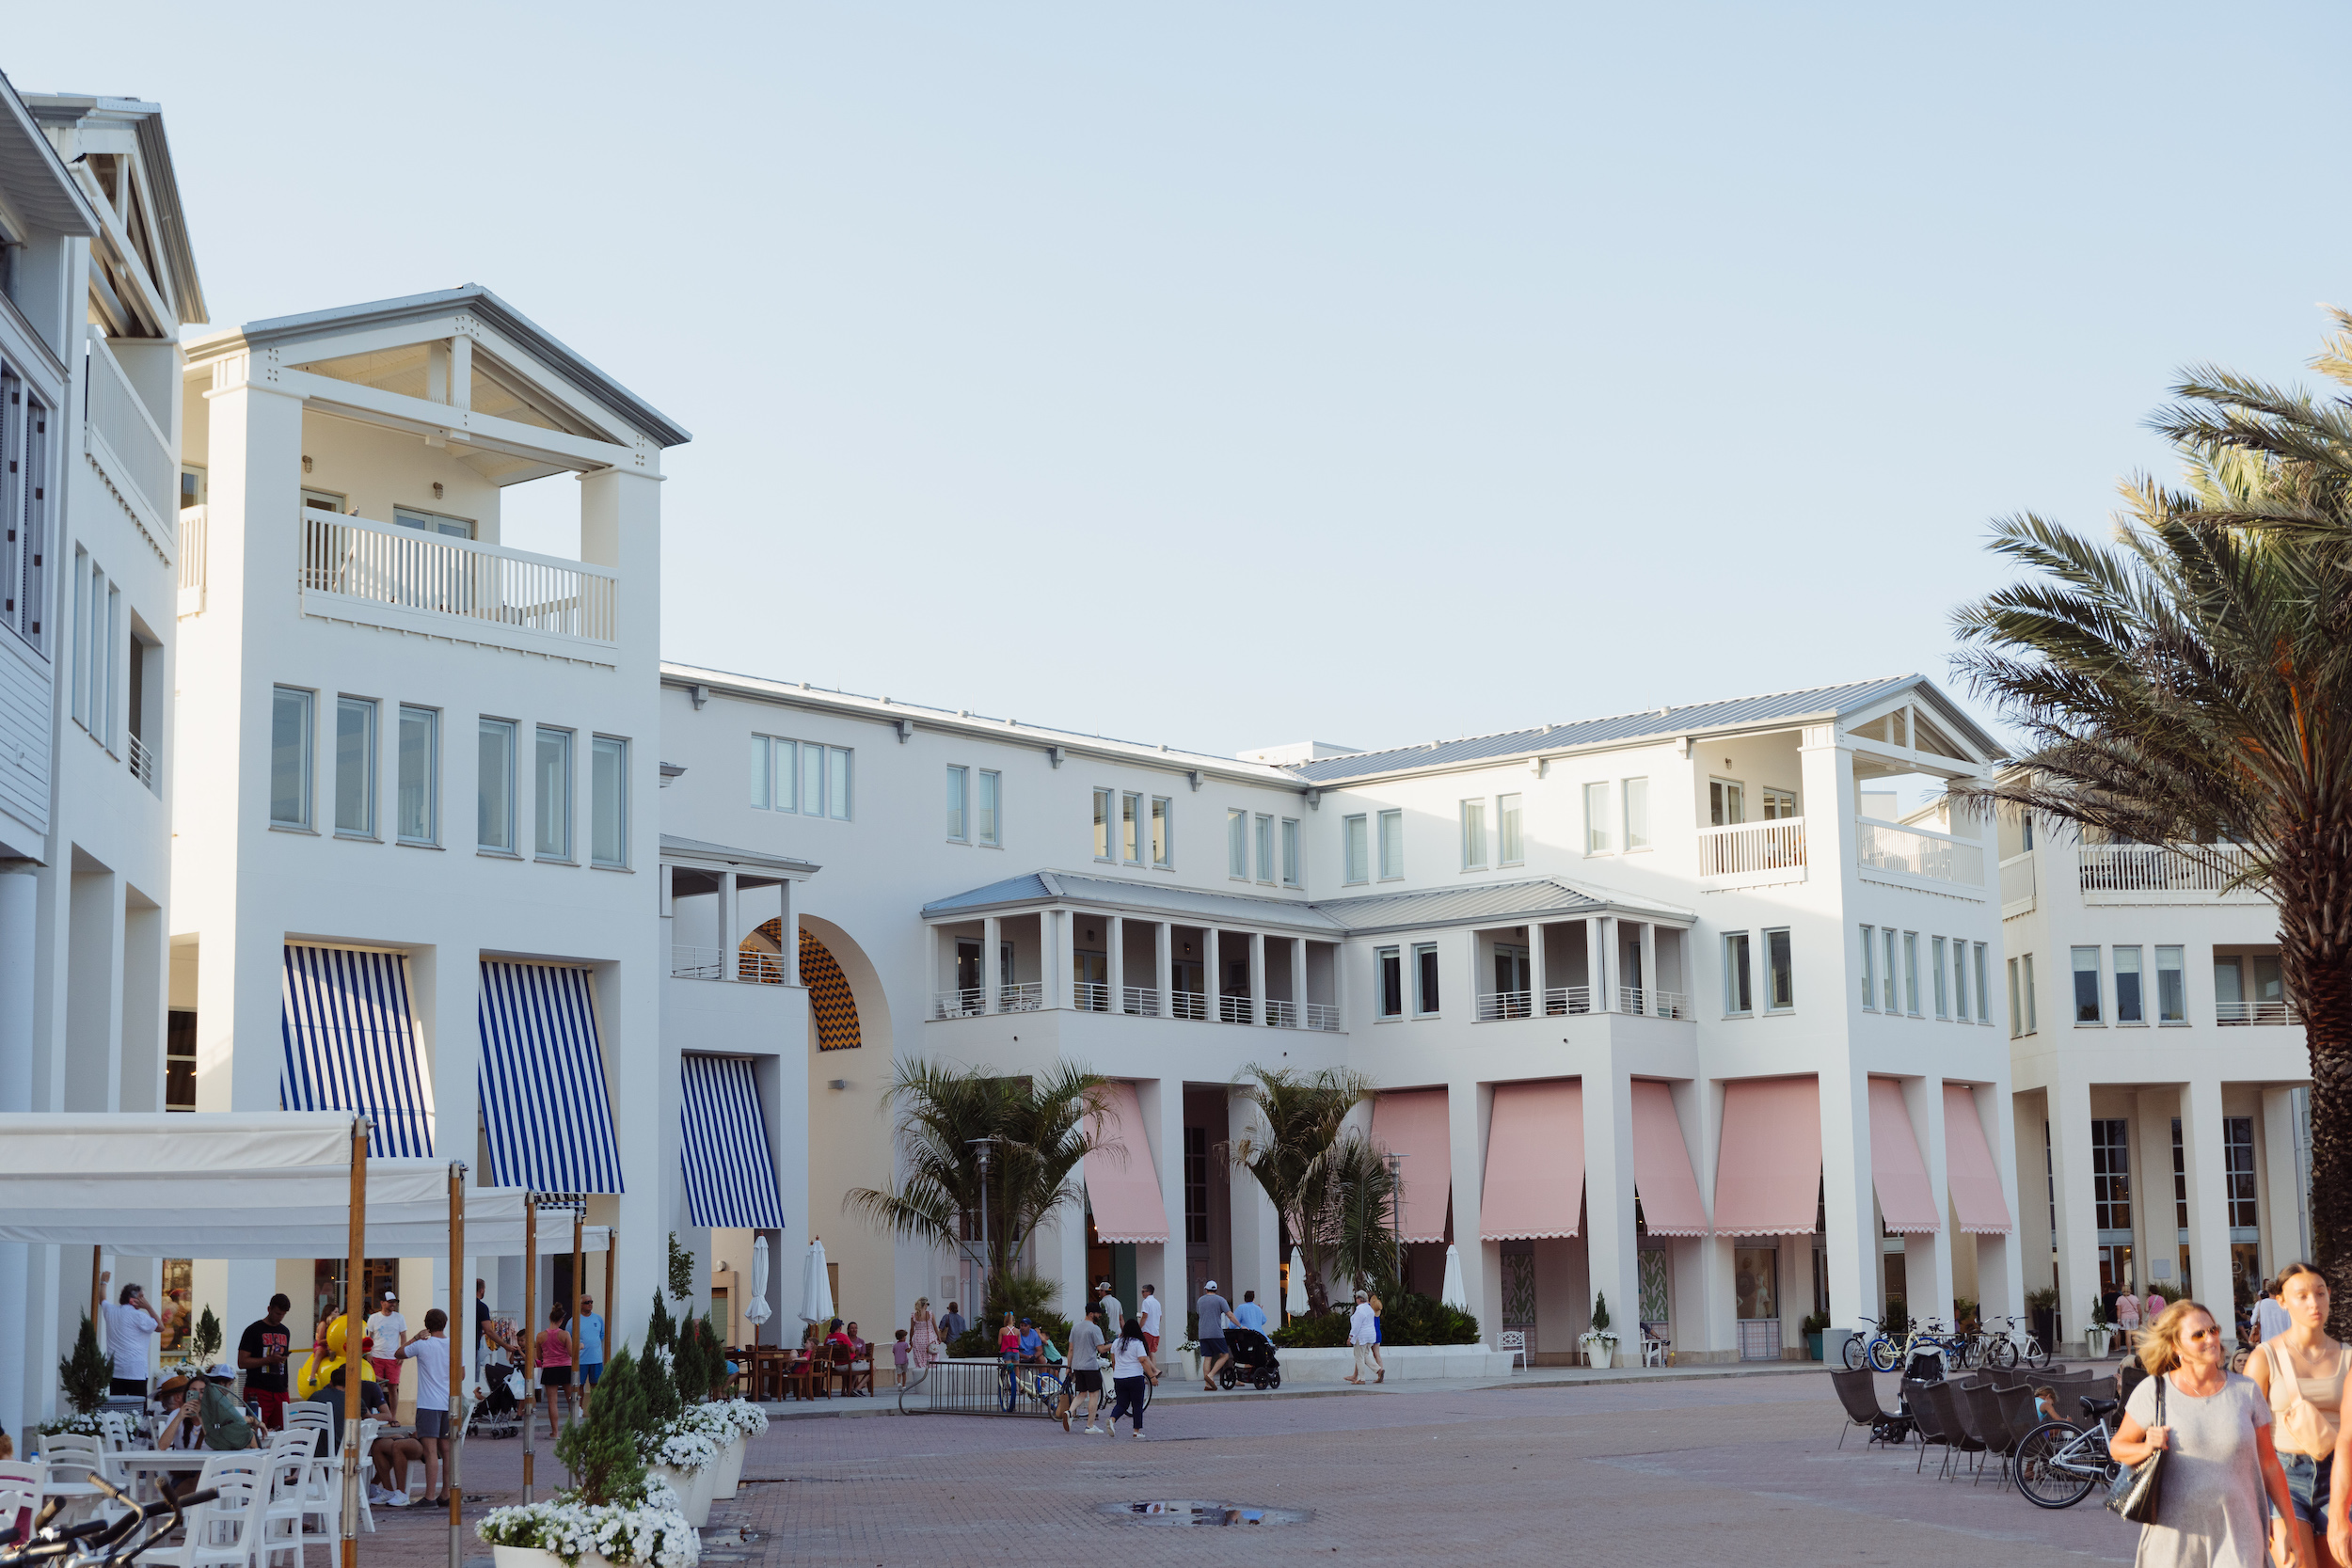 Seaside shopping center, Florida